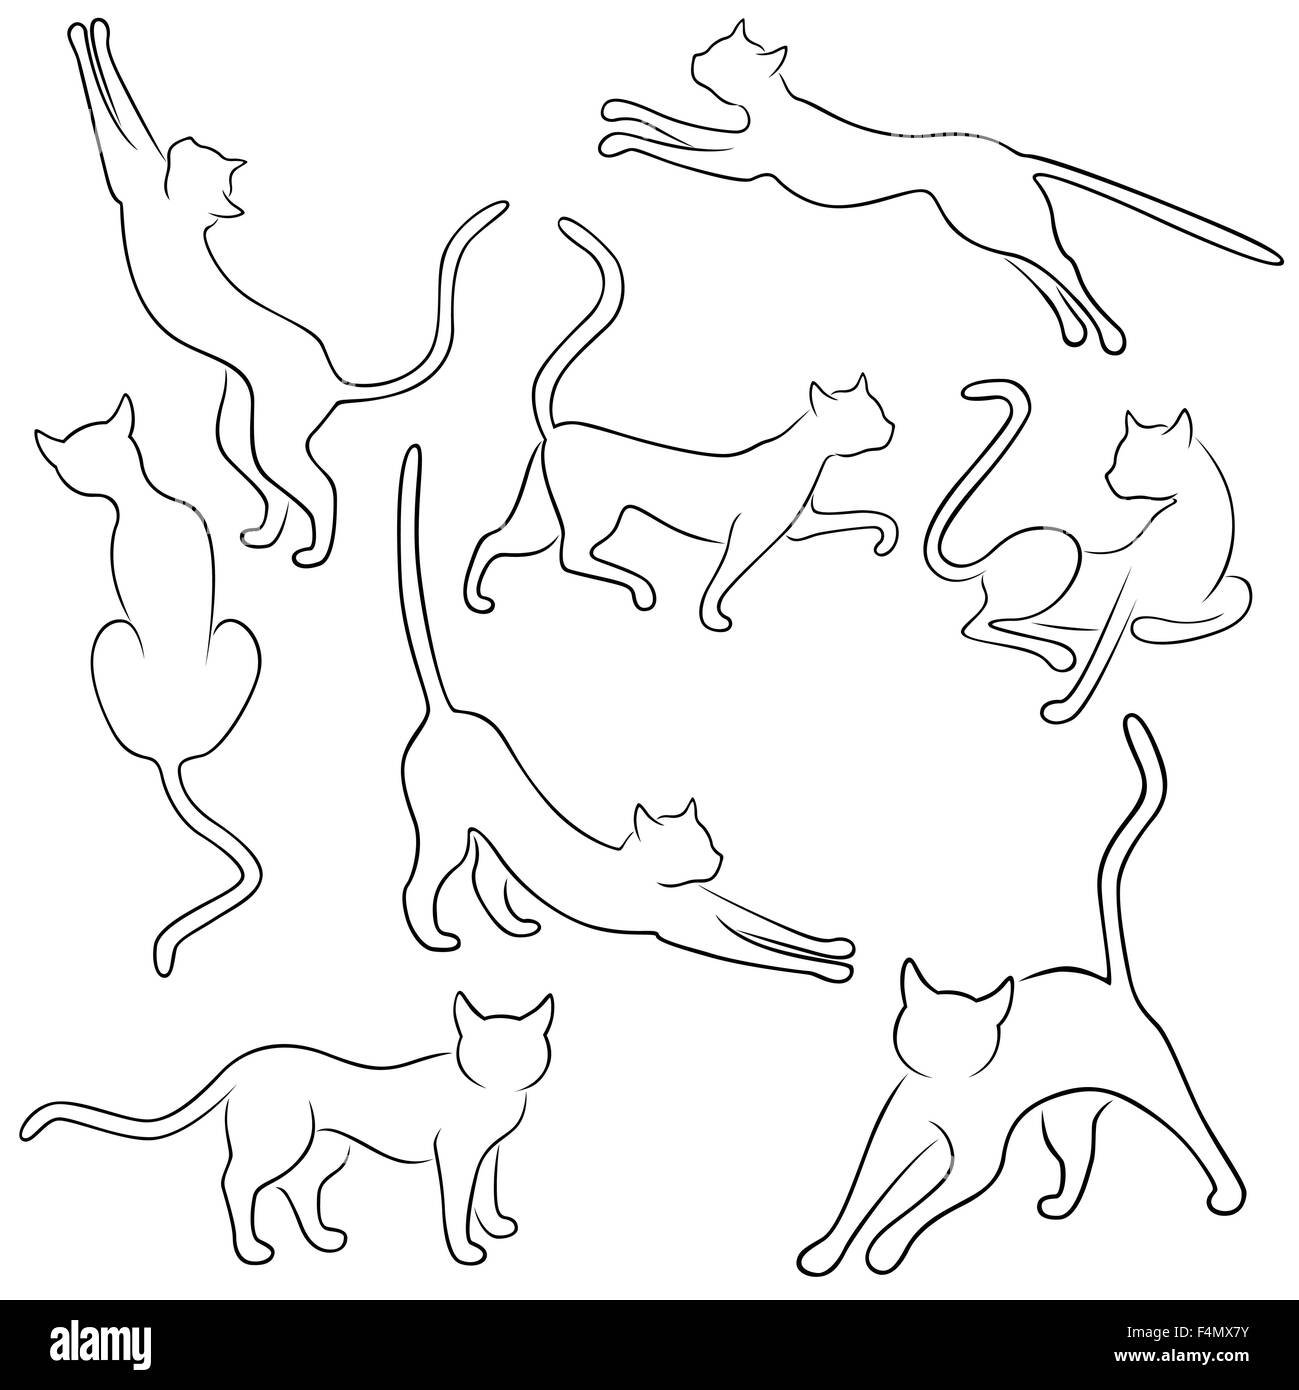 Ensemble de huit lignes de vecteur noir drôle de chats domestiques dans différentes poses sur un fond blanc, dessin illustration Illustration de Vecteur